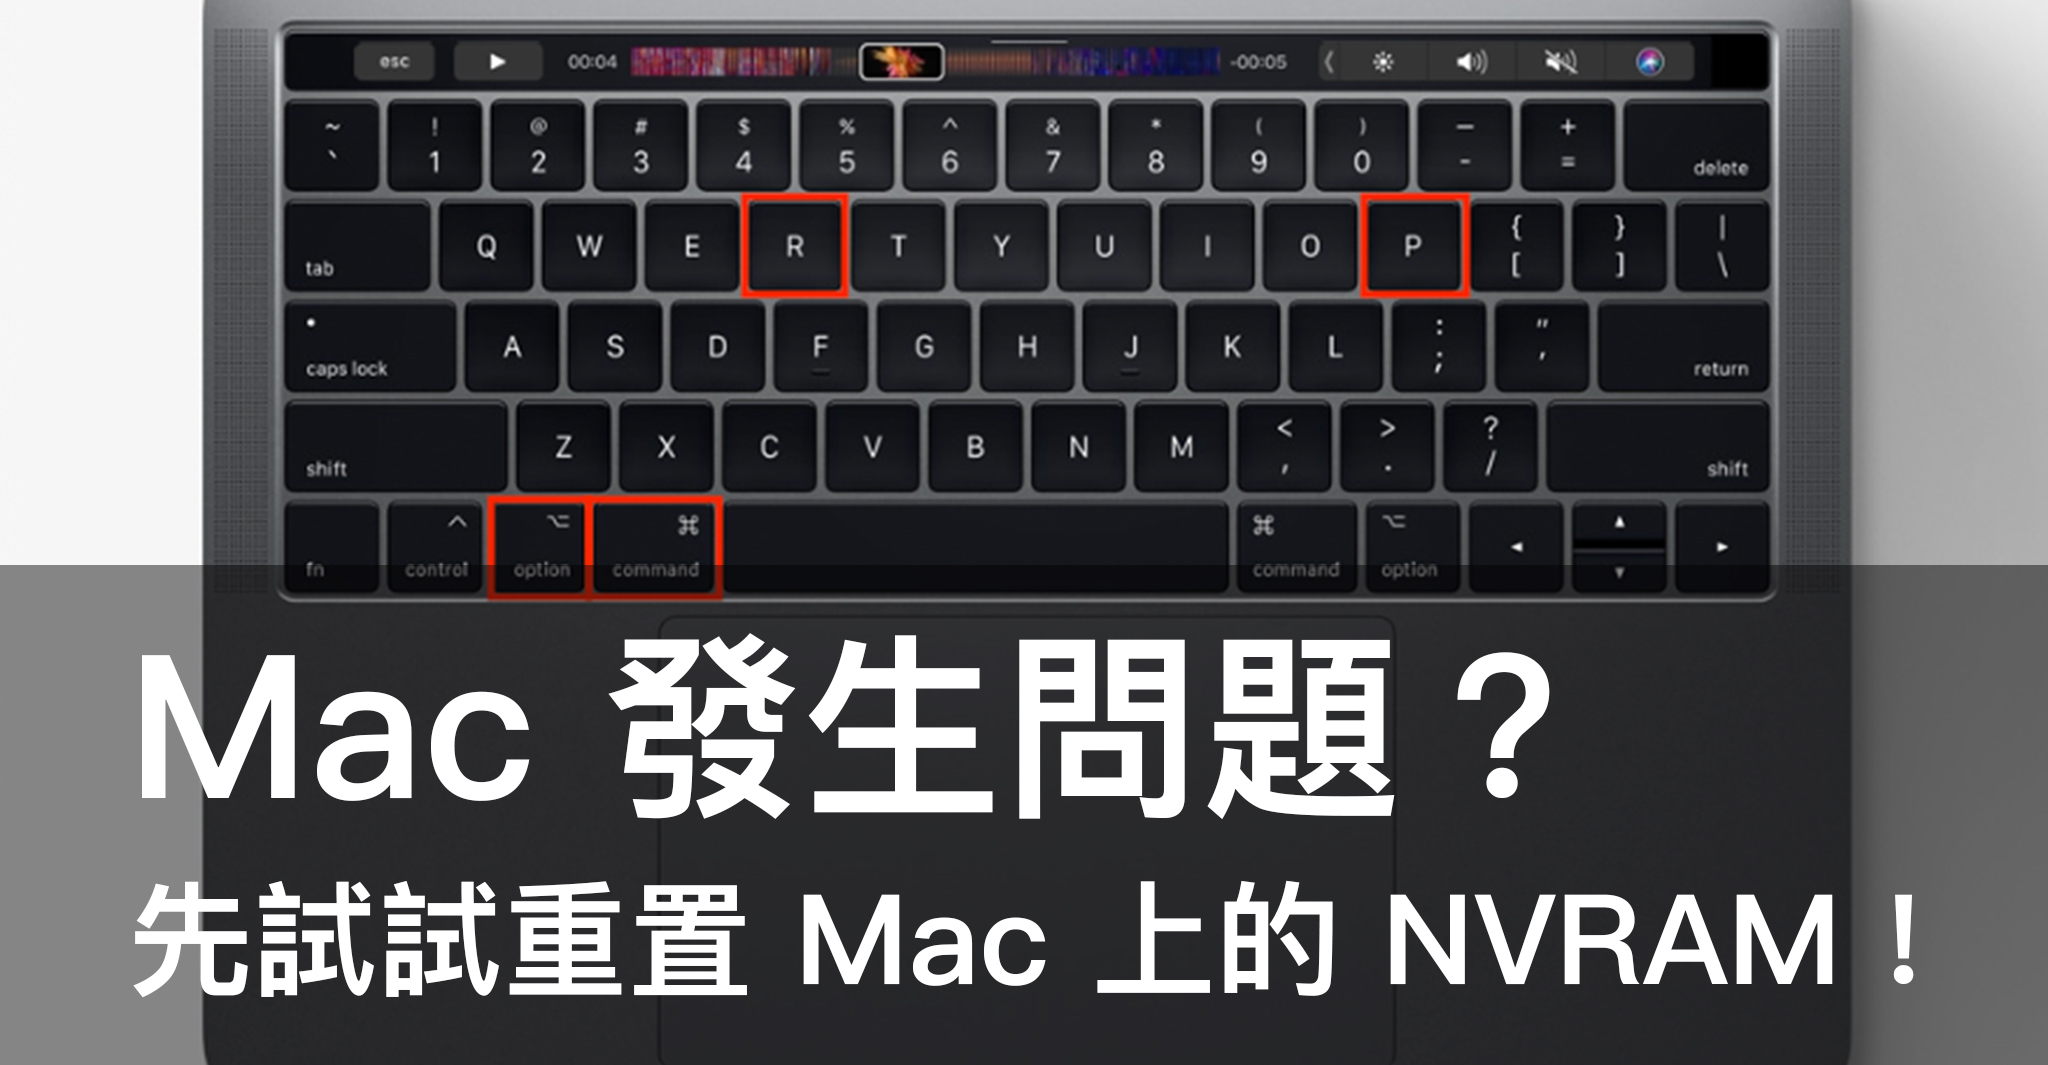 Mac 發生問題 先試試重置mac 上的nvram 蘋果仁 Iphone Ios 好物推薦科技媒體